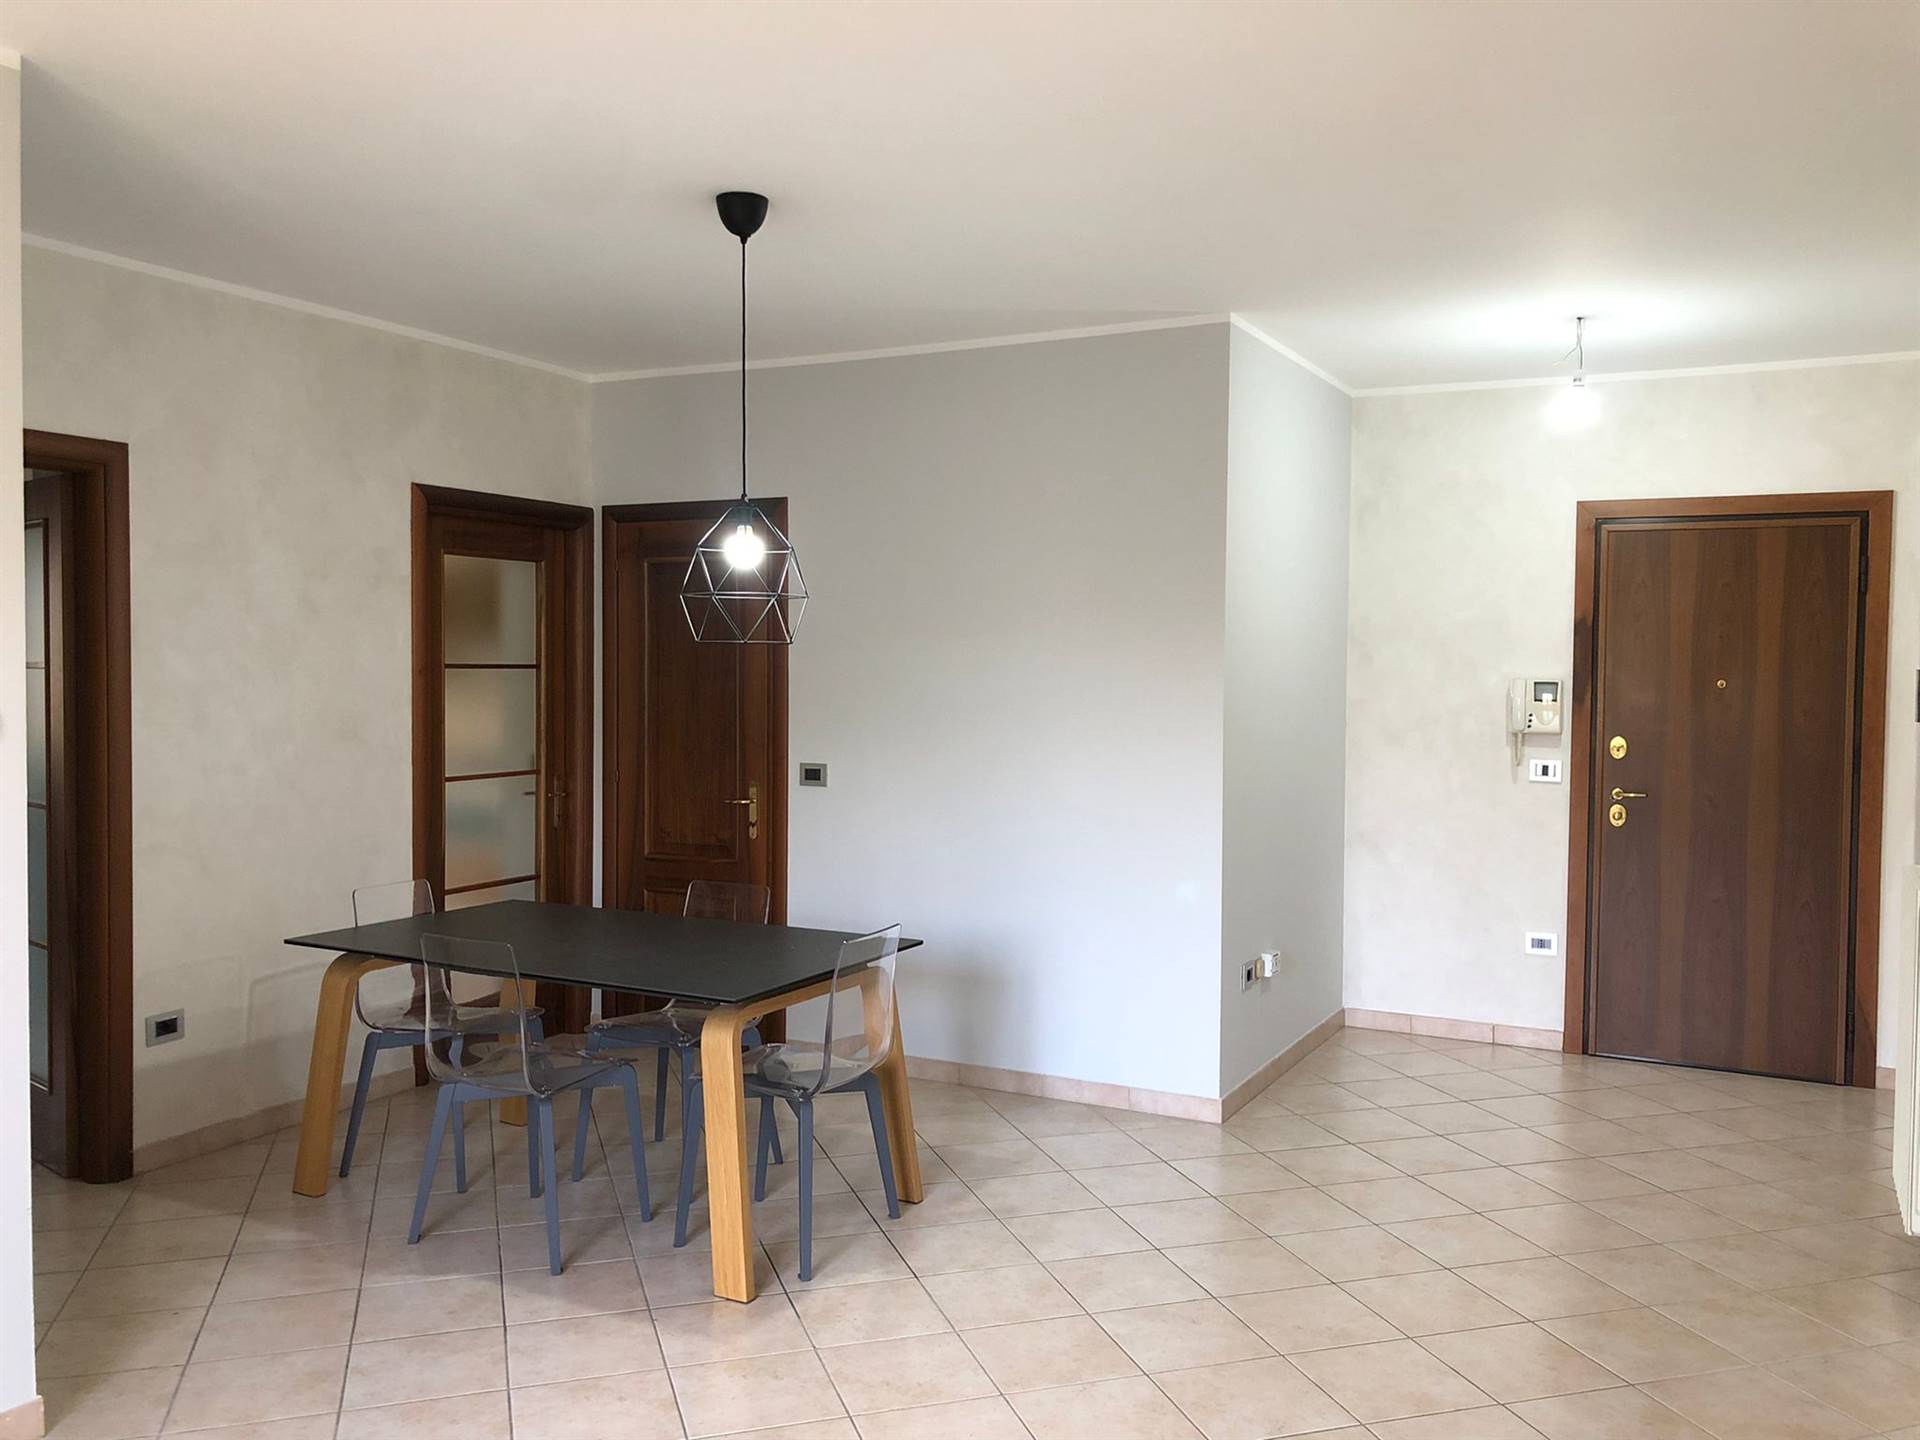 Appartamento in vendita a Viadana, 3 locali, prezzo € 135.000 | PortaleAgenzieImmobiliari.it